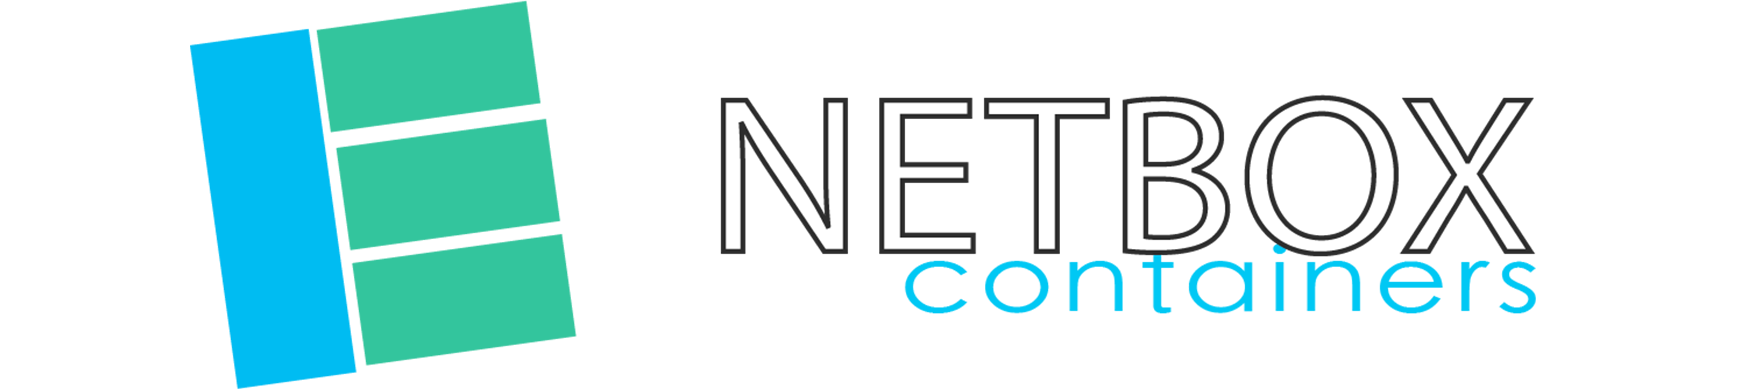 NETBOX Conteners